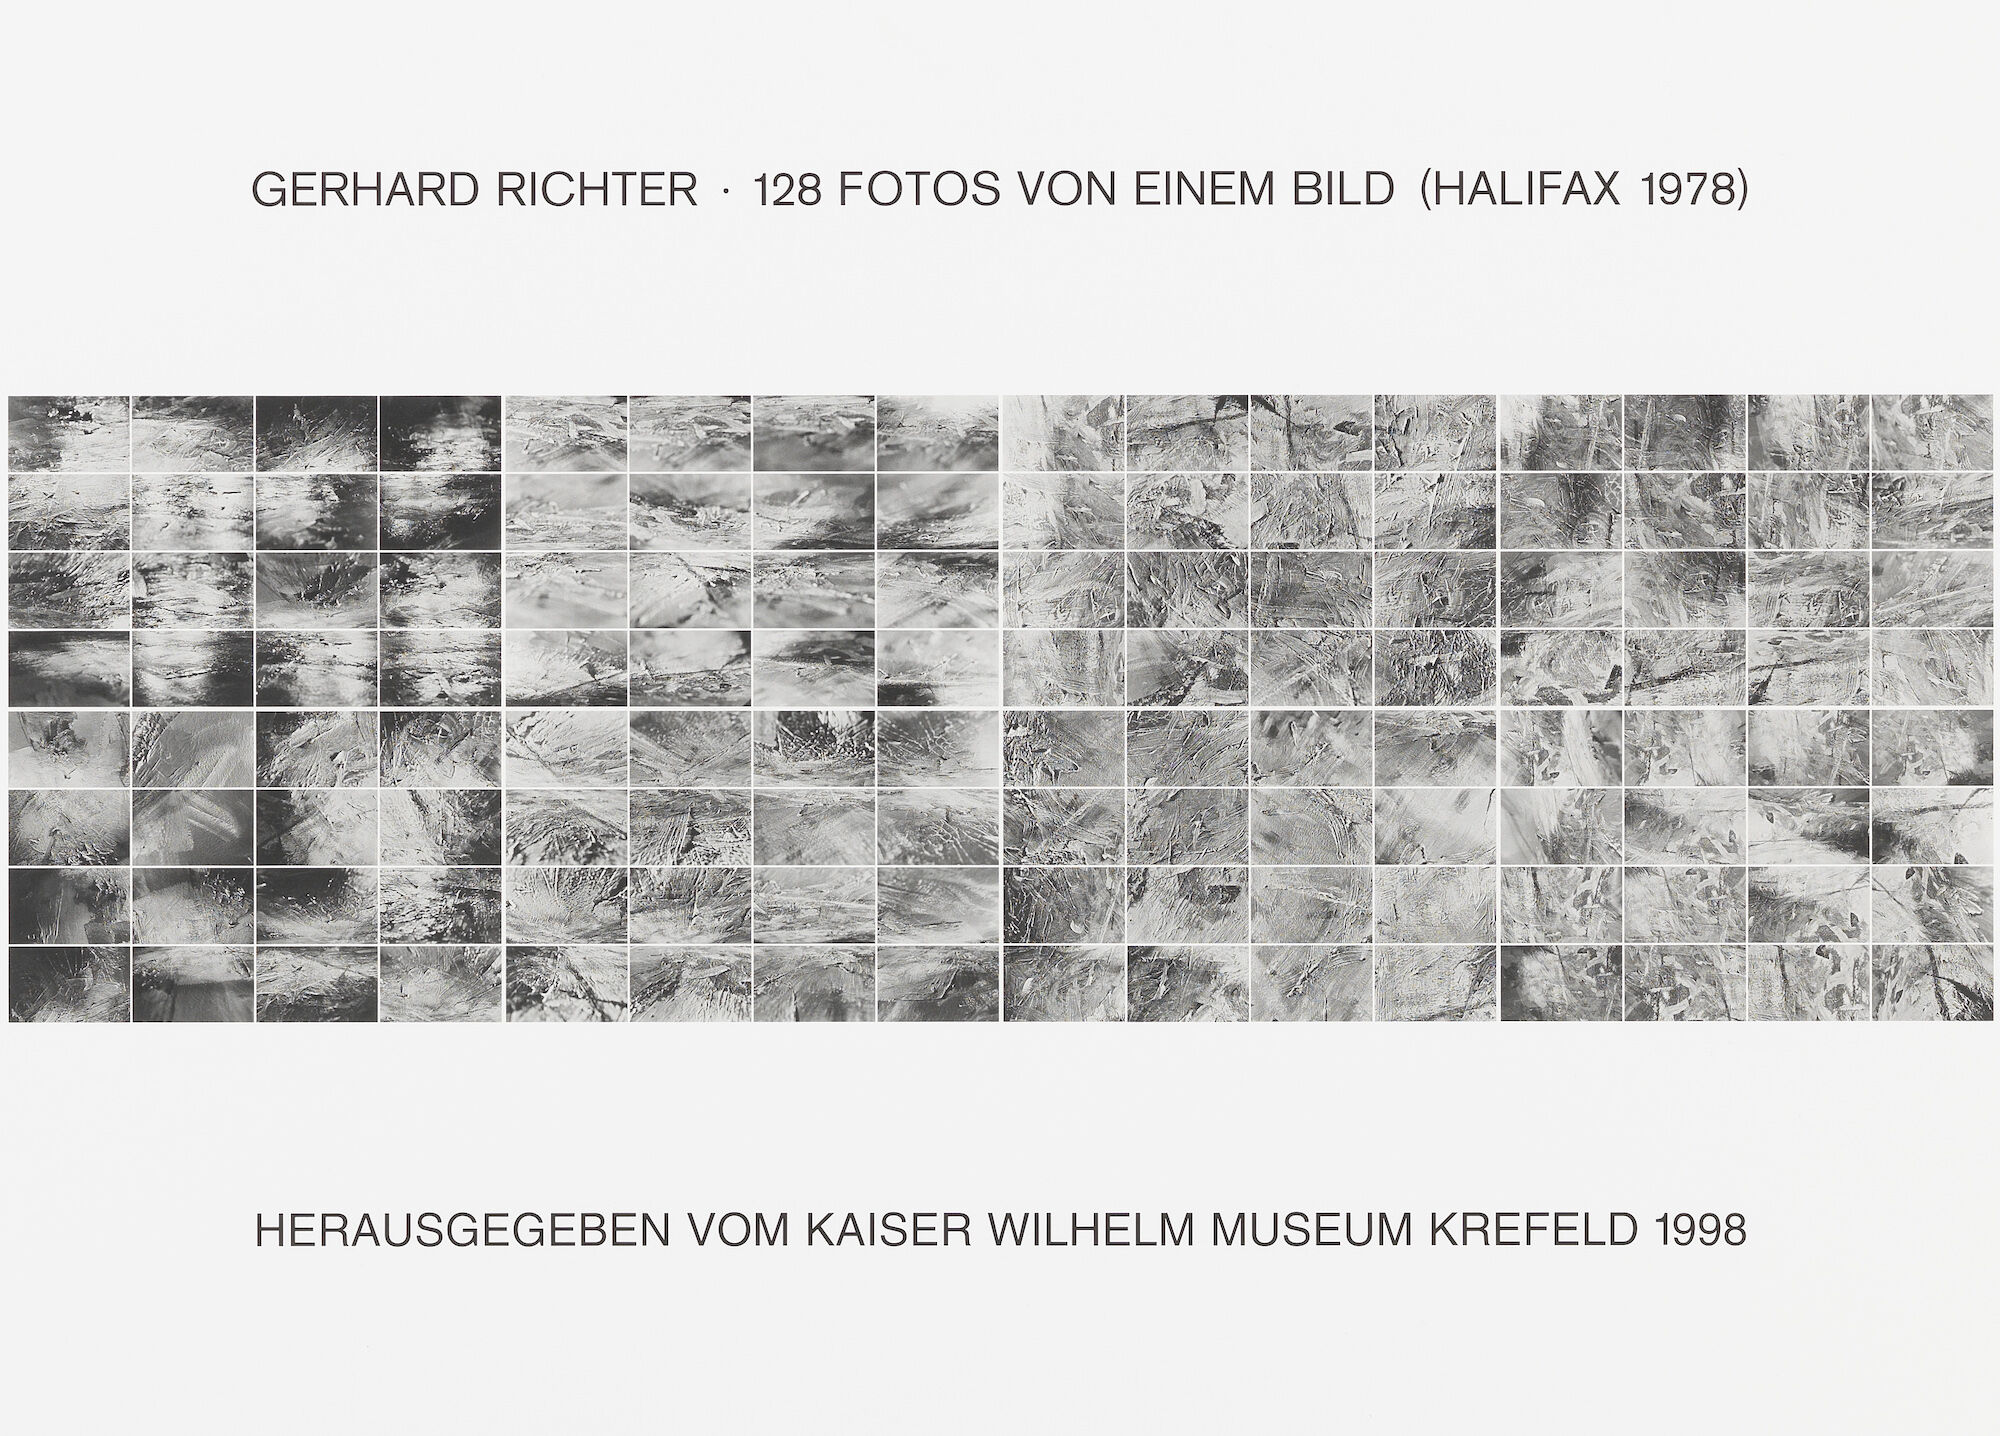 Mappe "128 Fotos von einem Bild (Halifax 1978), II" (1998) von Gerhard Richter